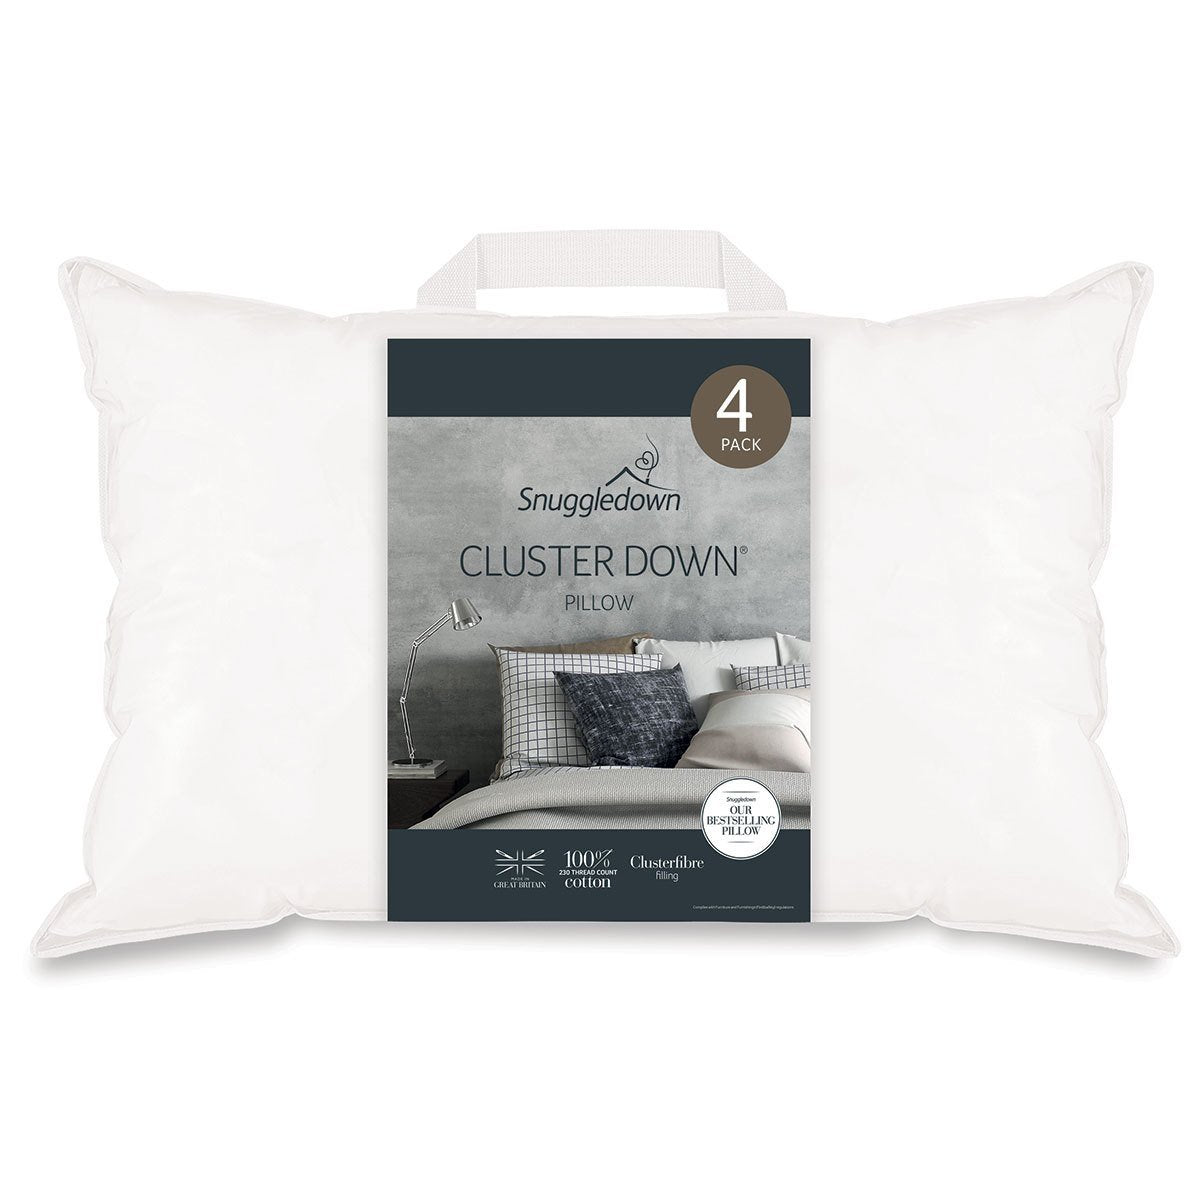 Snuggledown Clusterdown Synthetic Pillows, 4 PackSnuggledown Clusterdown Synthetic Pillows, 4 Pack - Signature Retail Stores